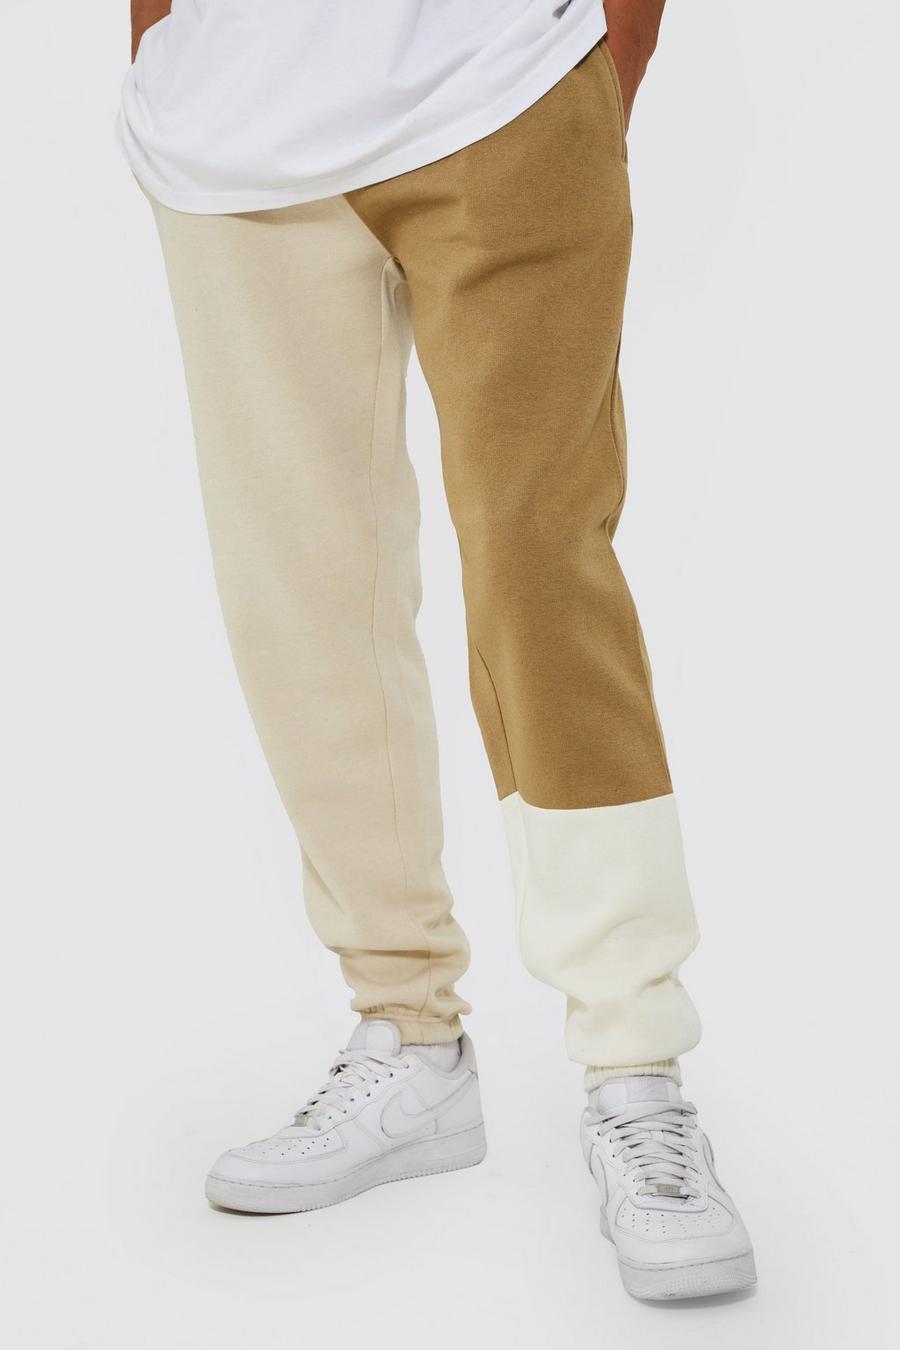 Pantalón deportivo Tall con retazos y colores en bloque, Ecru bianco